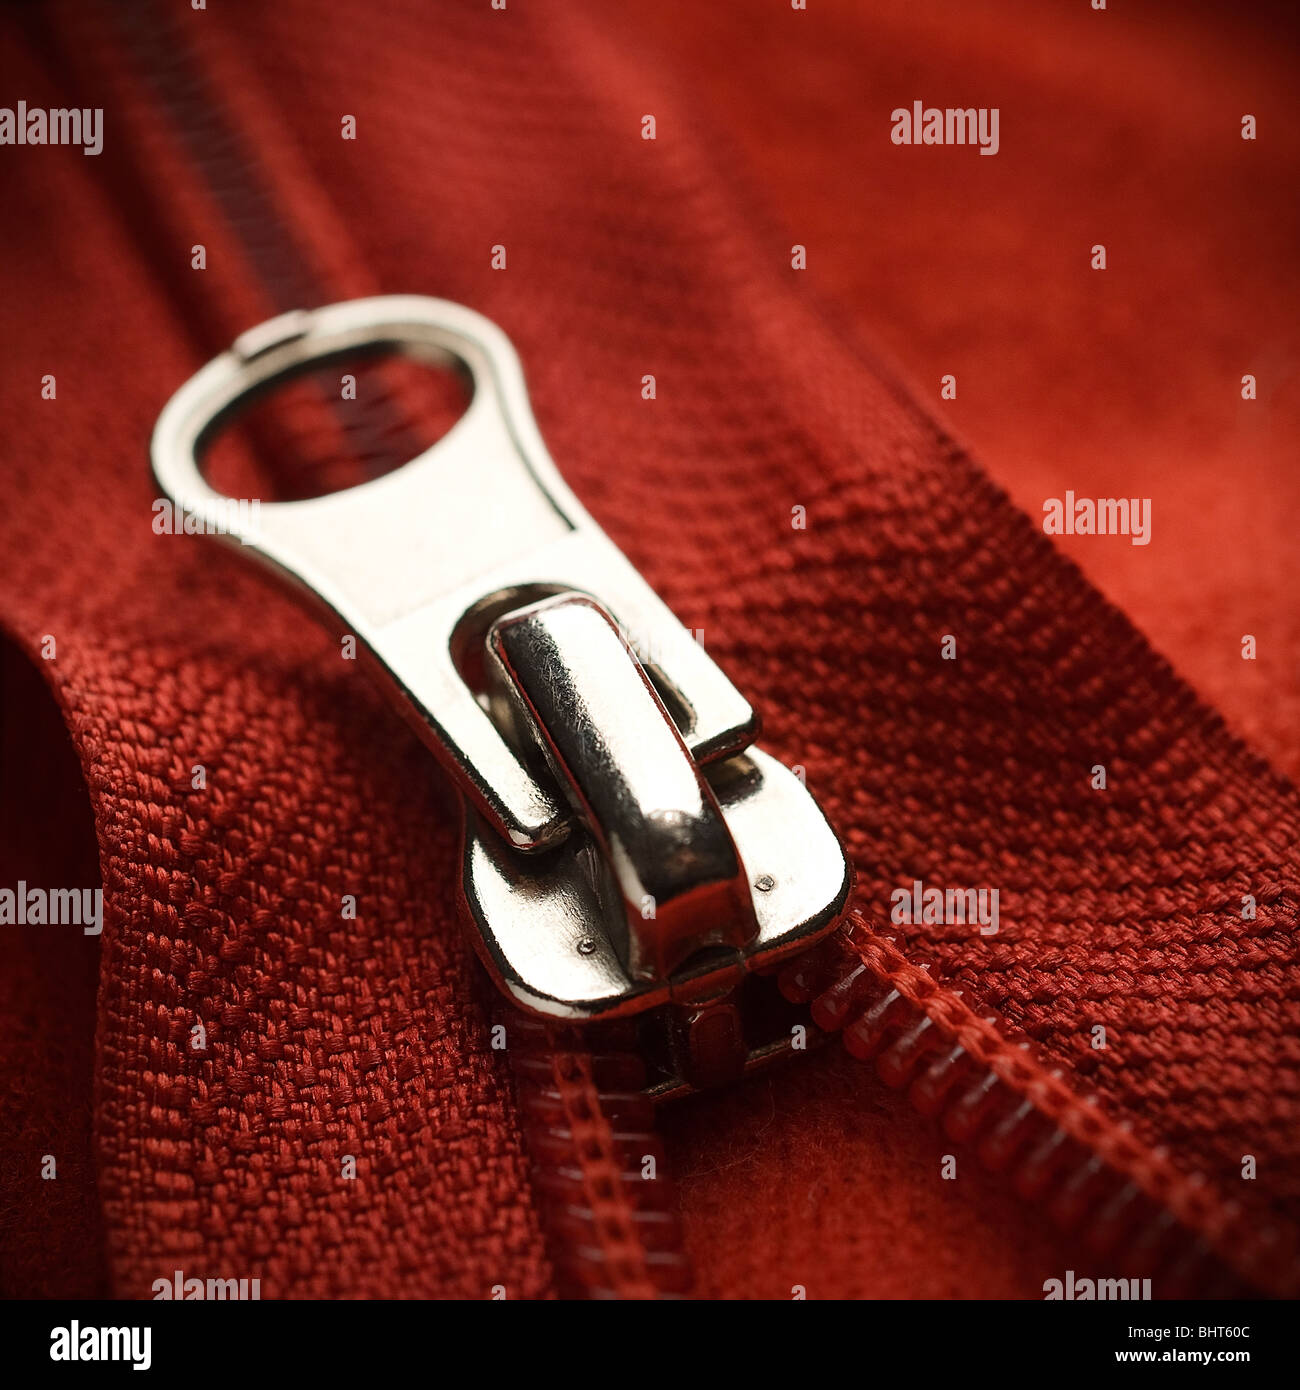 closeup of a red zipper Stock Photo - Alamy